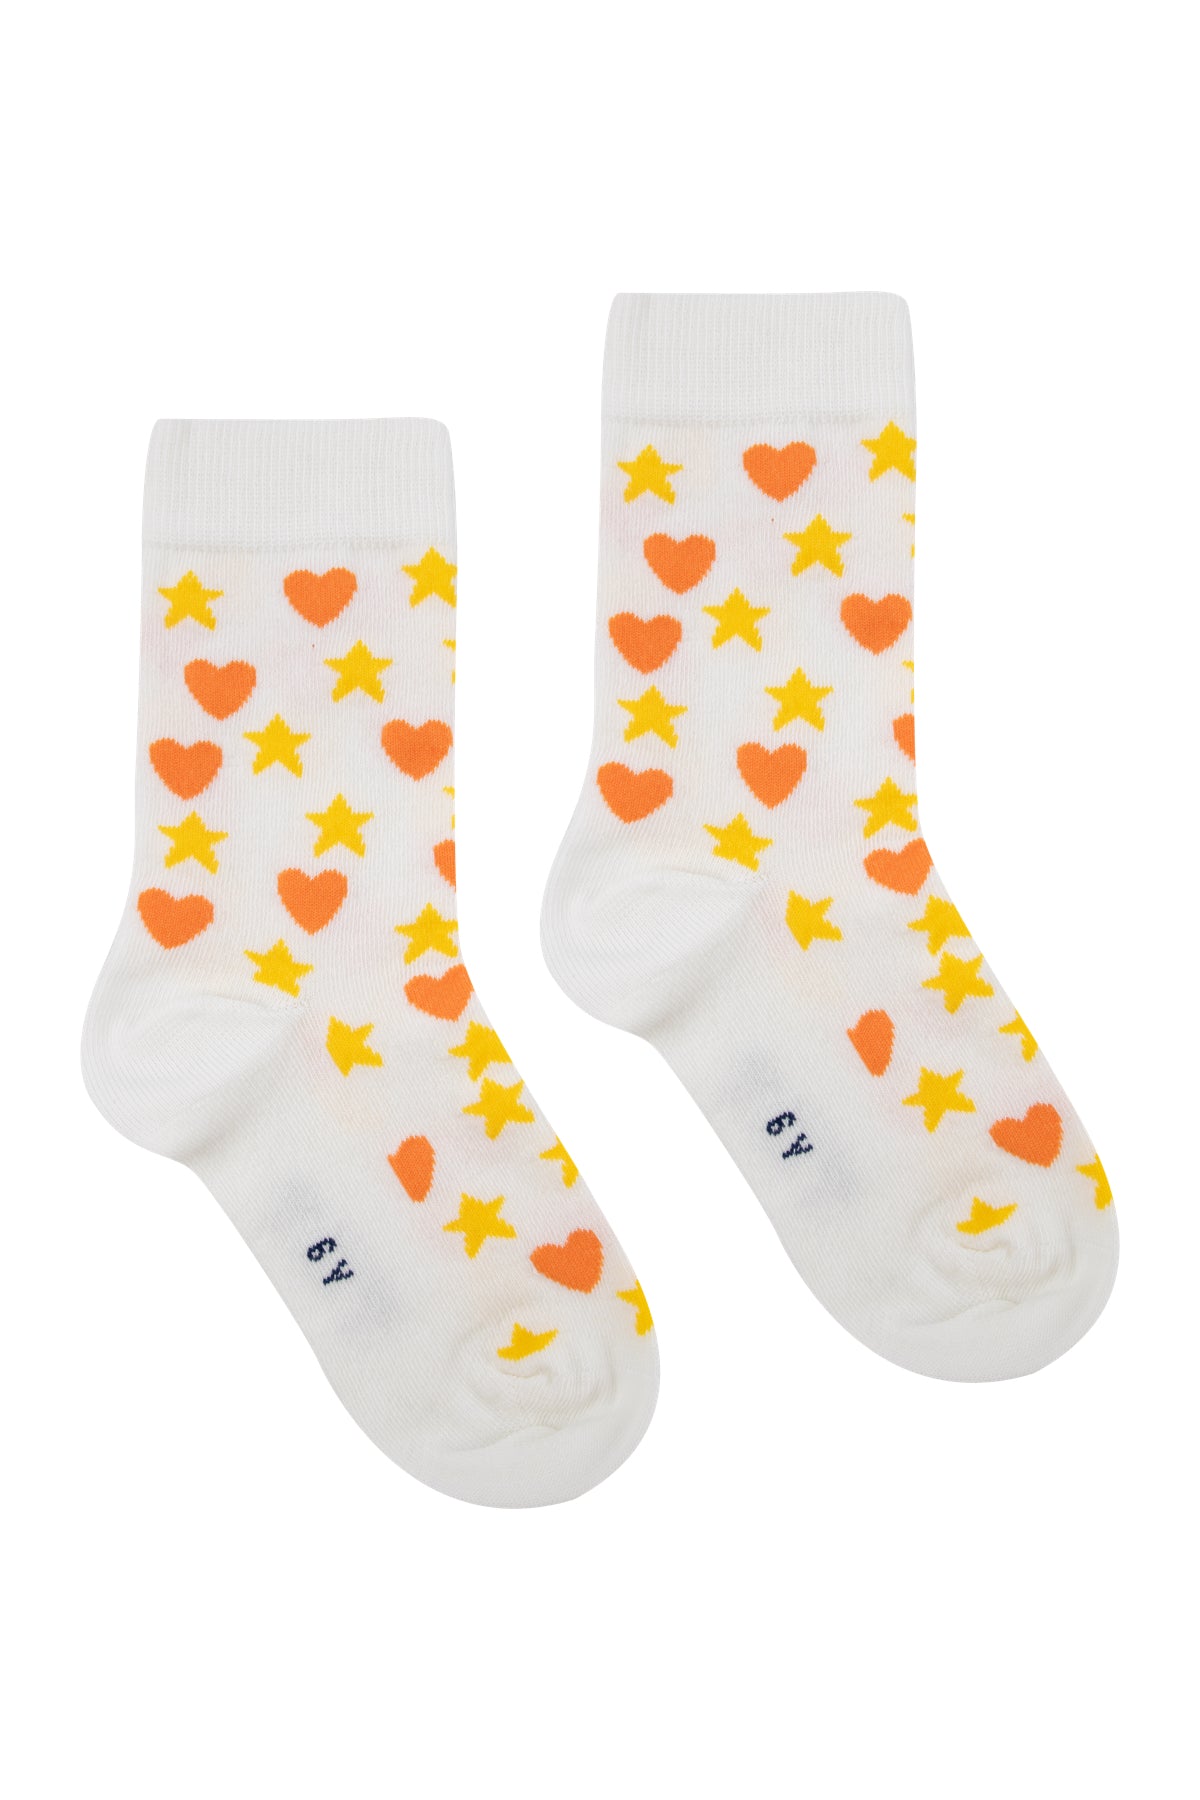 Tiny Cottons Hearts Stars Medium Socks - Off-white